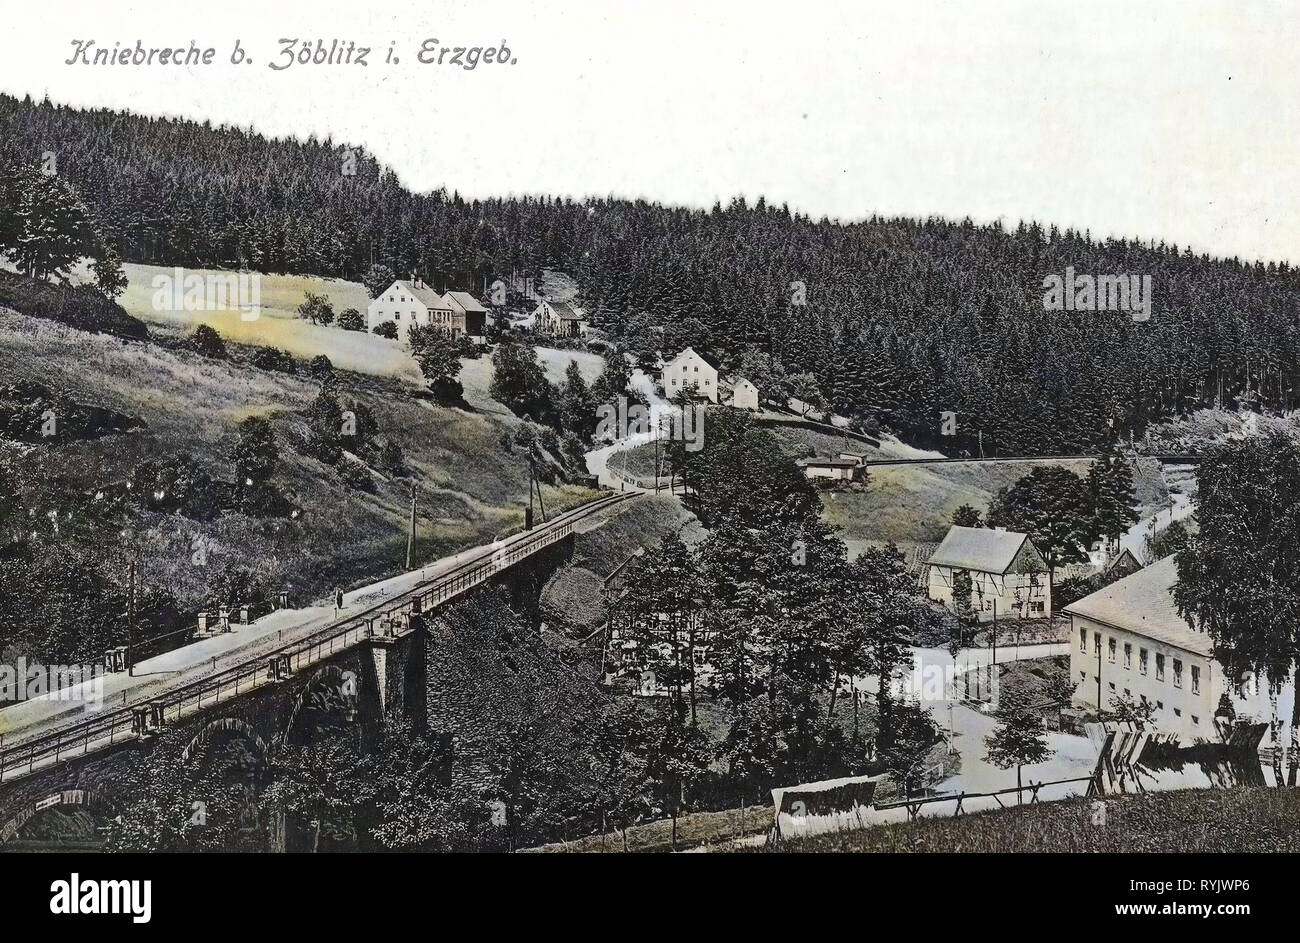 Schienen in Deutschland, Brücken im Erzgebirgskreis, Gebäude im Erzgebirgskreis 1911, Erzgebirgskreis, Kniebreche Zöblitz, Stockfoto